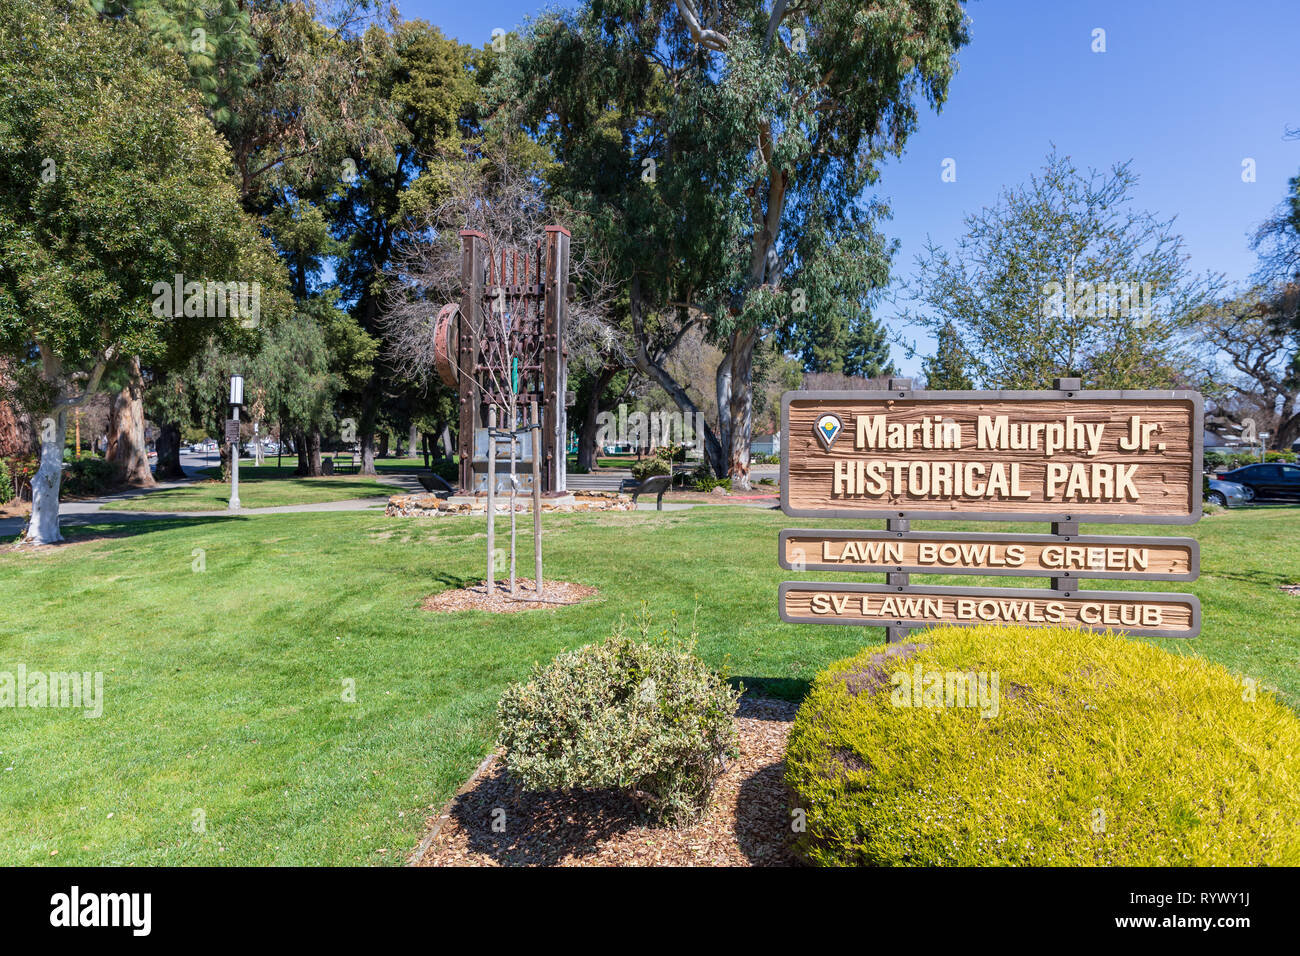 Martin Murphy Jr. Historical Park (Murphy Park), Lawn Bowls Green, SV ...